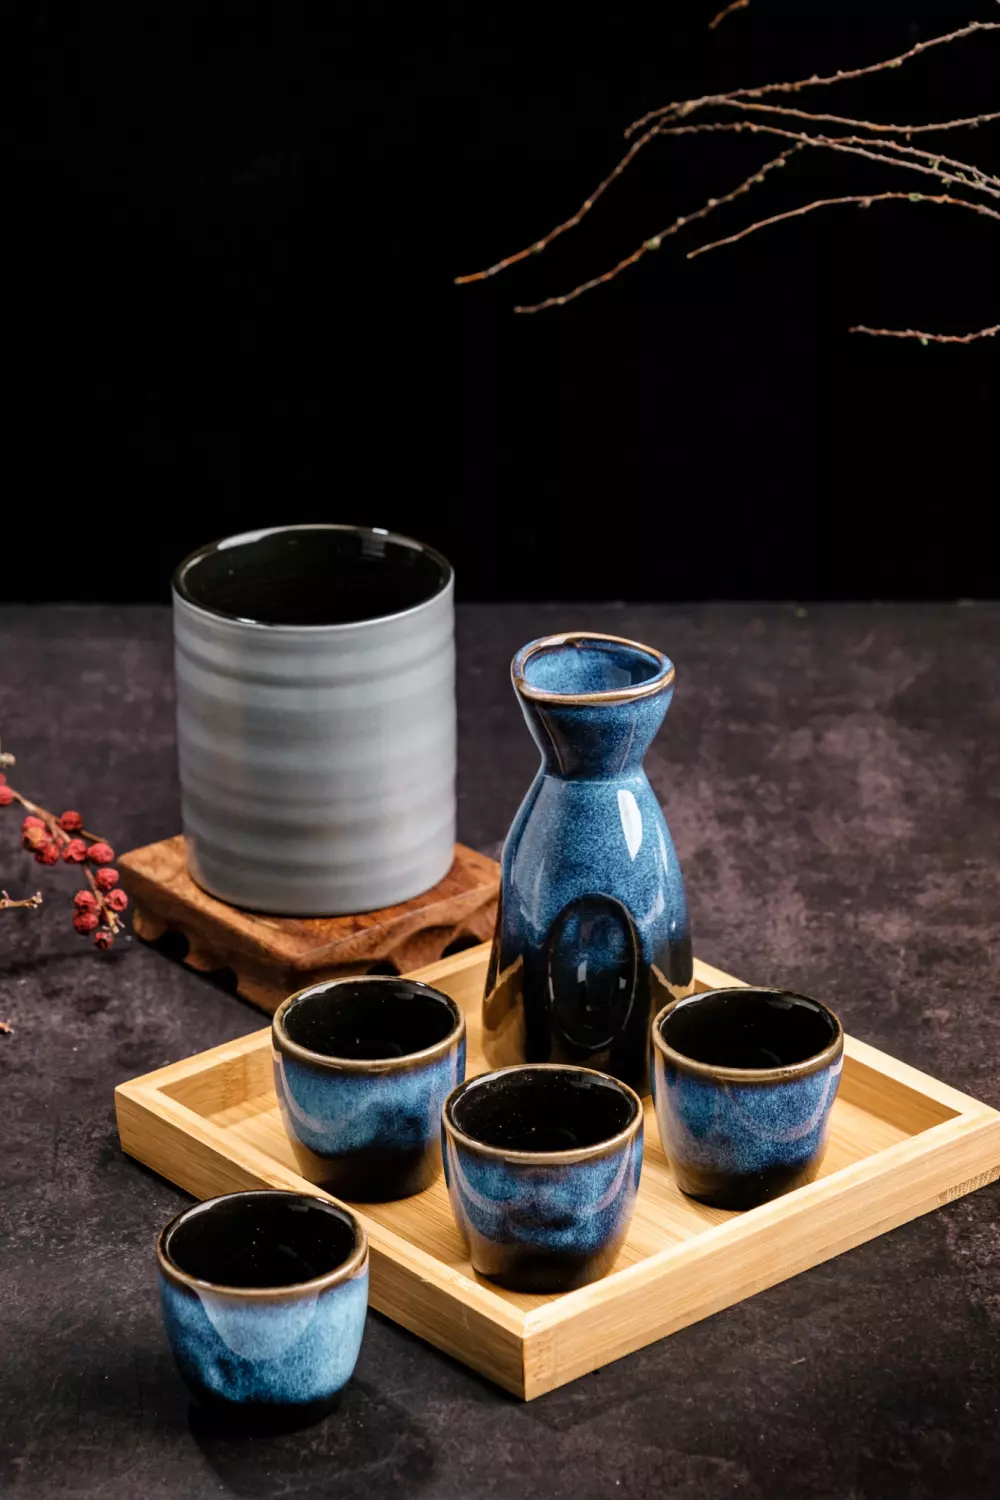 Aantique Japanese Sake Set  Japanese Sake Set, 1 Bottle And 5 Cups With  Bamboo Tray - TrueKatana